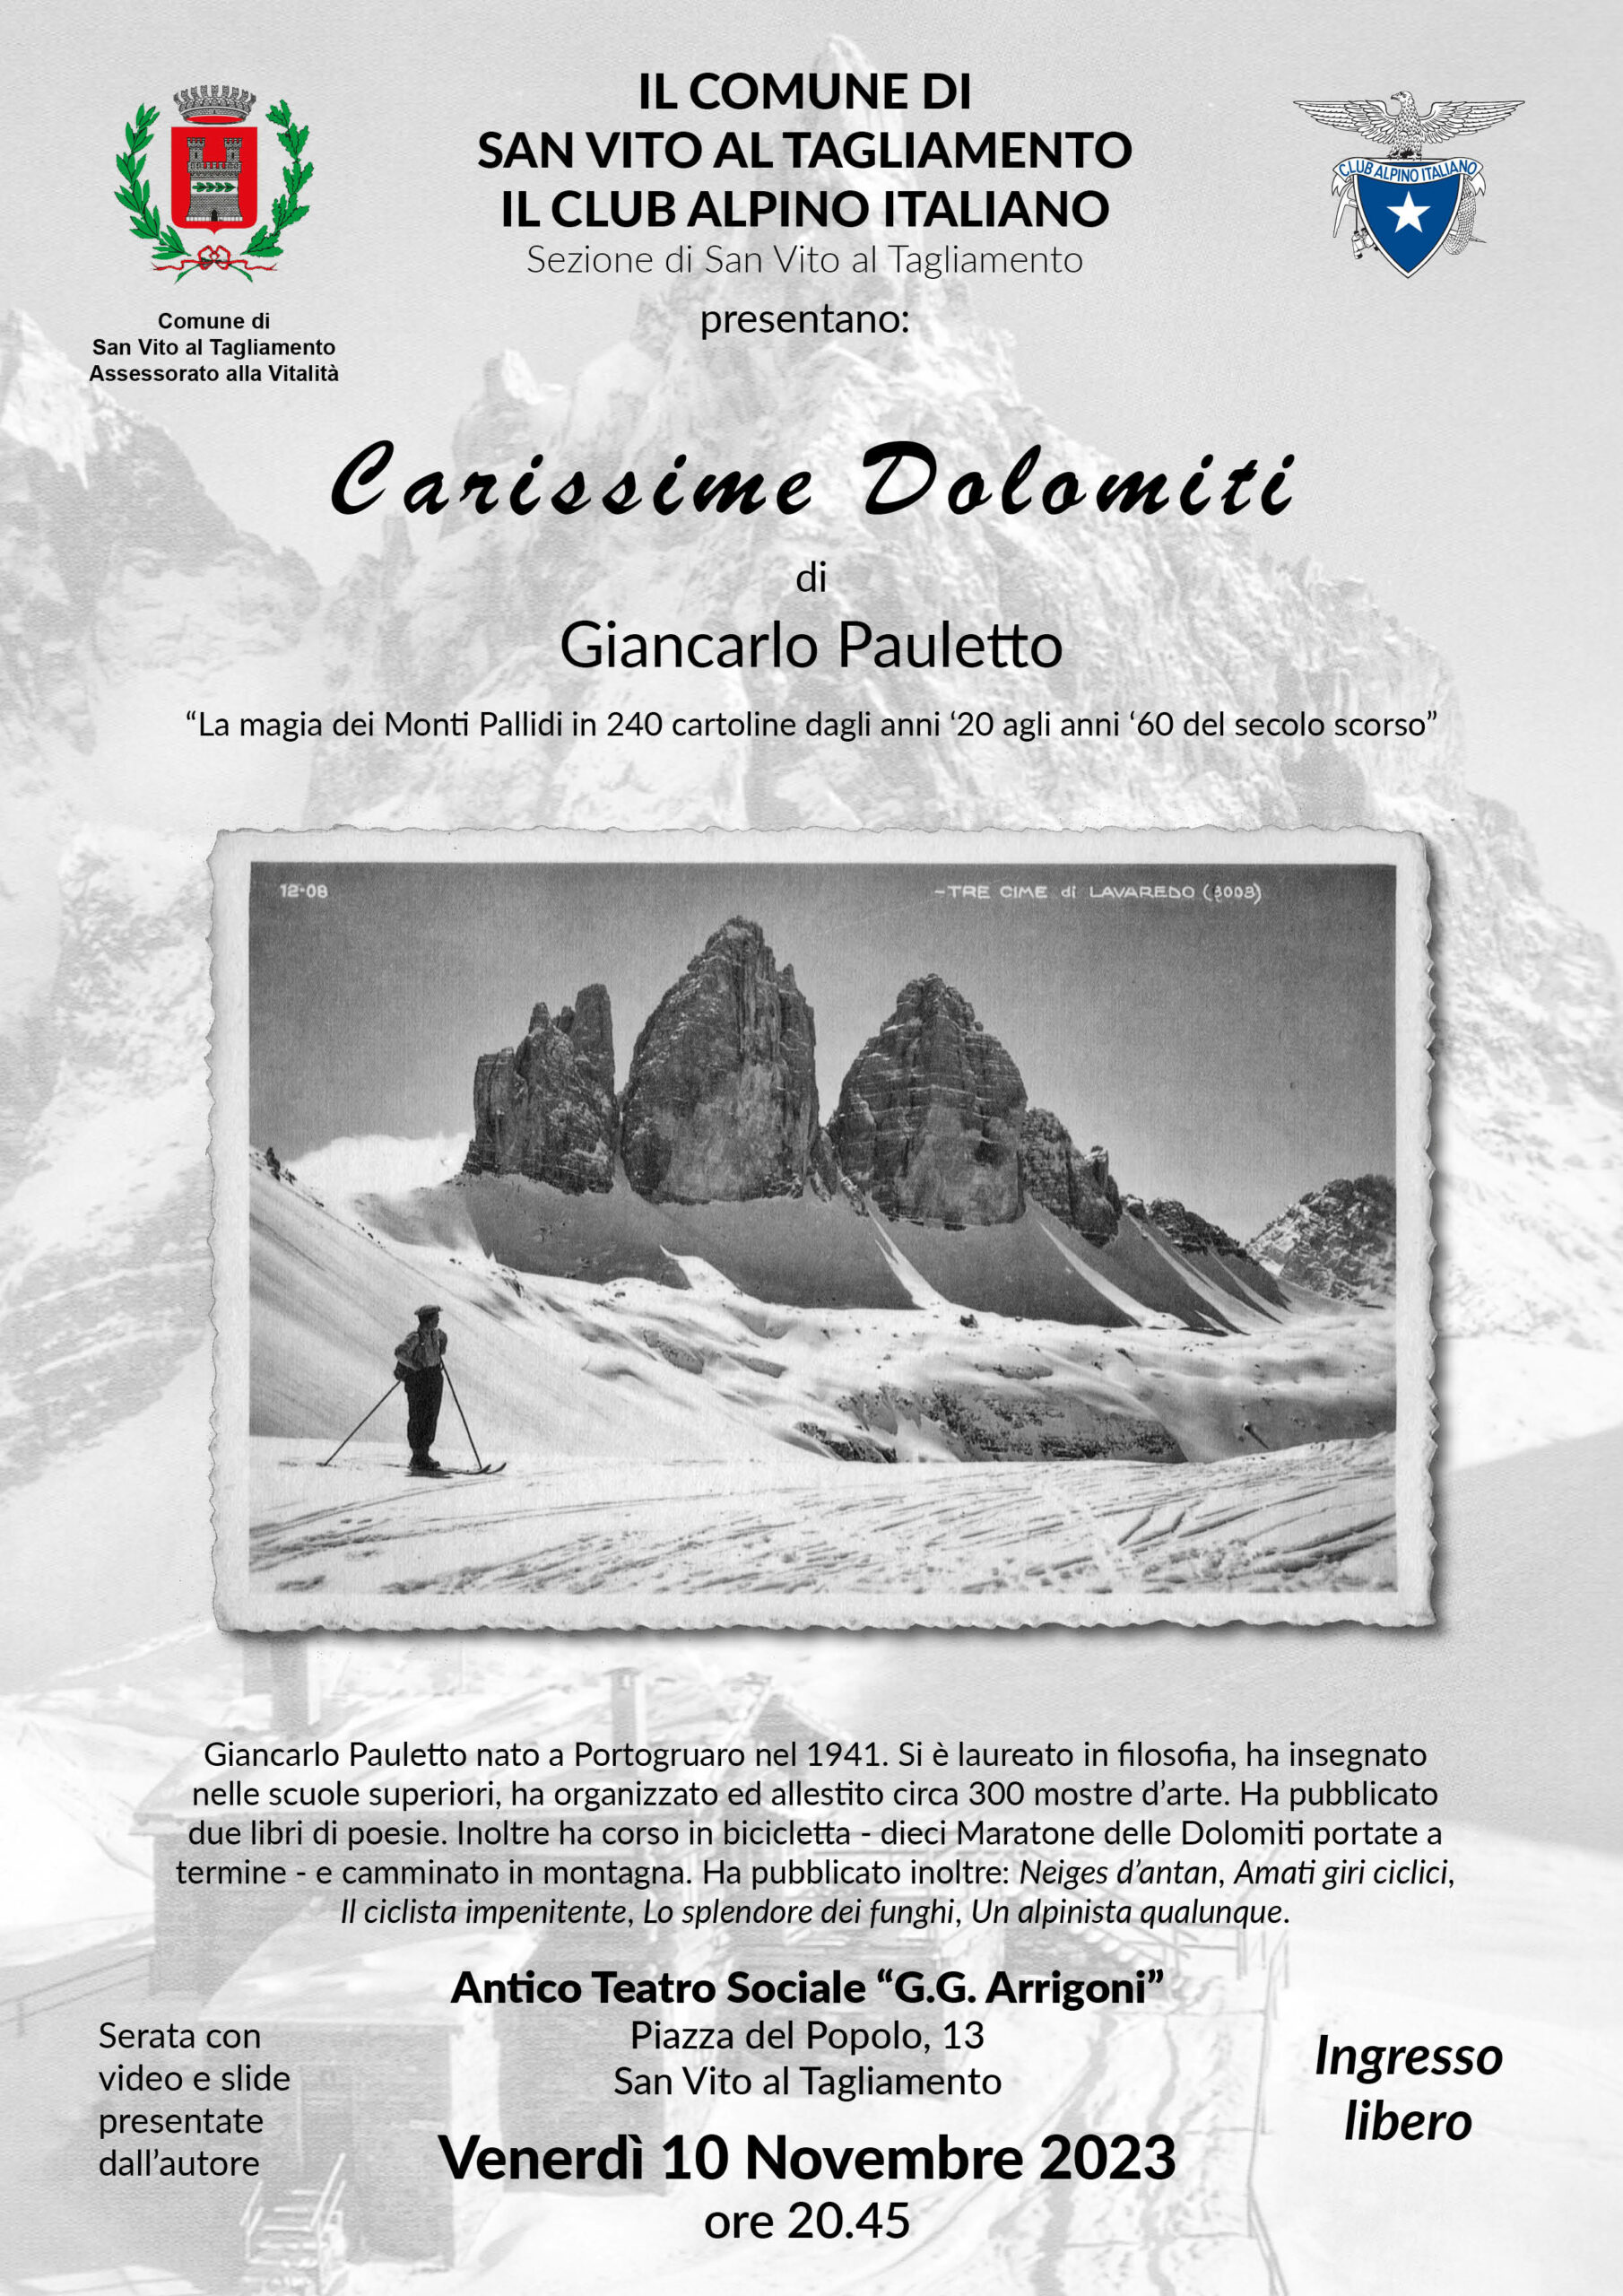 “Carissime Dolomiti” di Giancarlo Pauletto